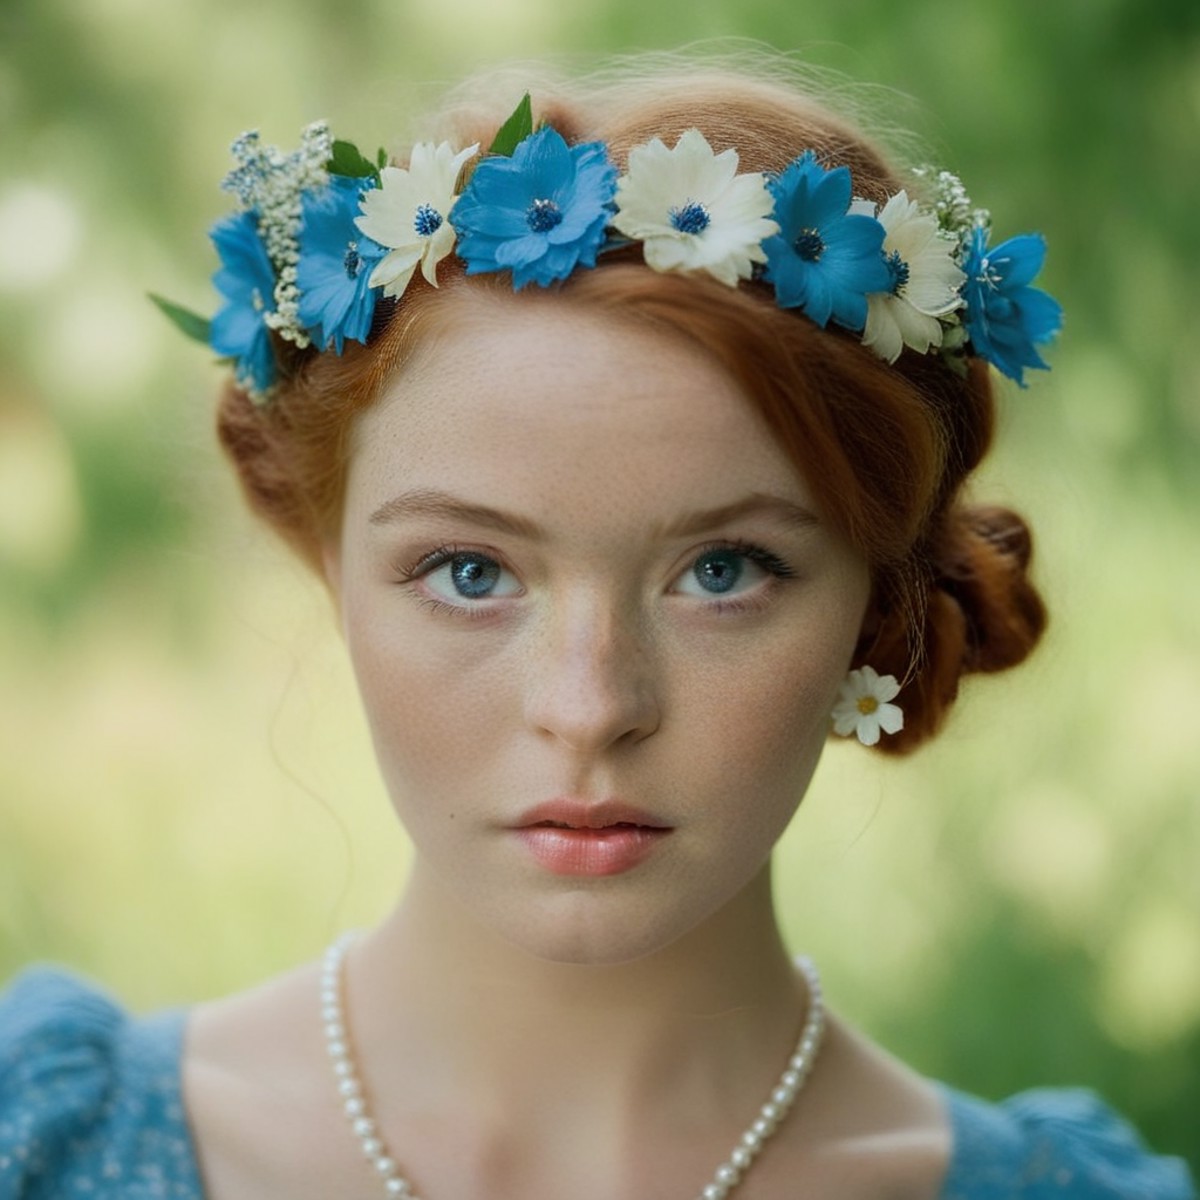 cinematic film still of  <lora:Krissy Lynn:1.2>
<lora:PerfectEyesXL:1> (blue_eyes)
 <lora:Retro:1>
a woman with a flower i...